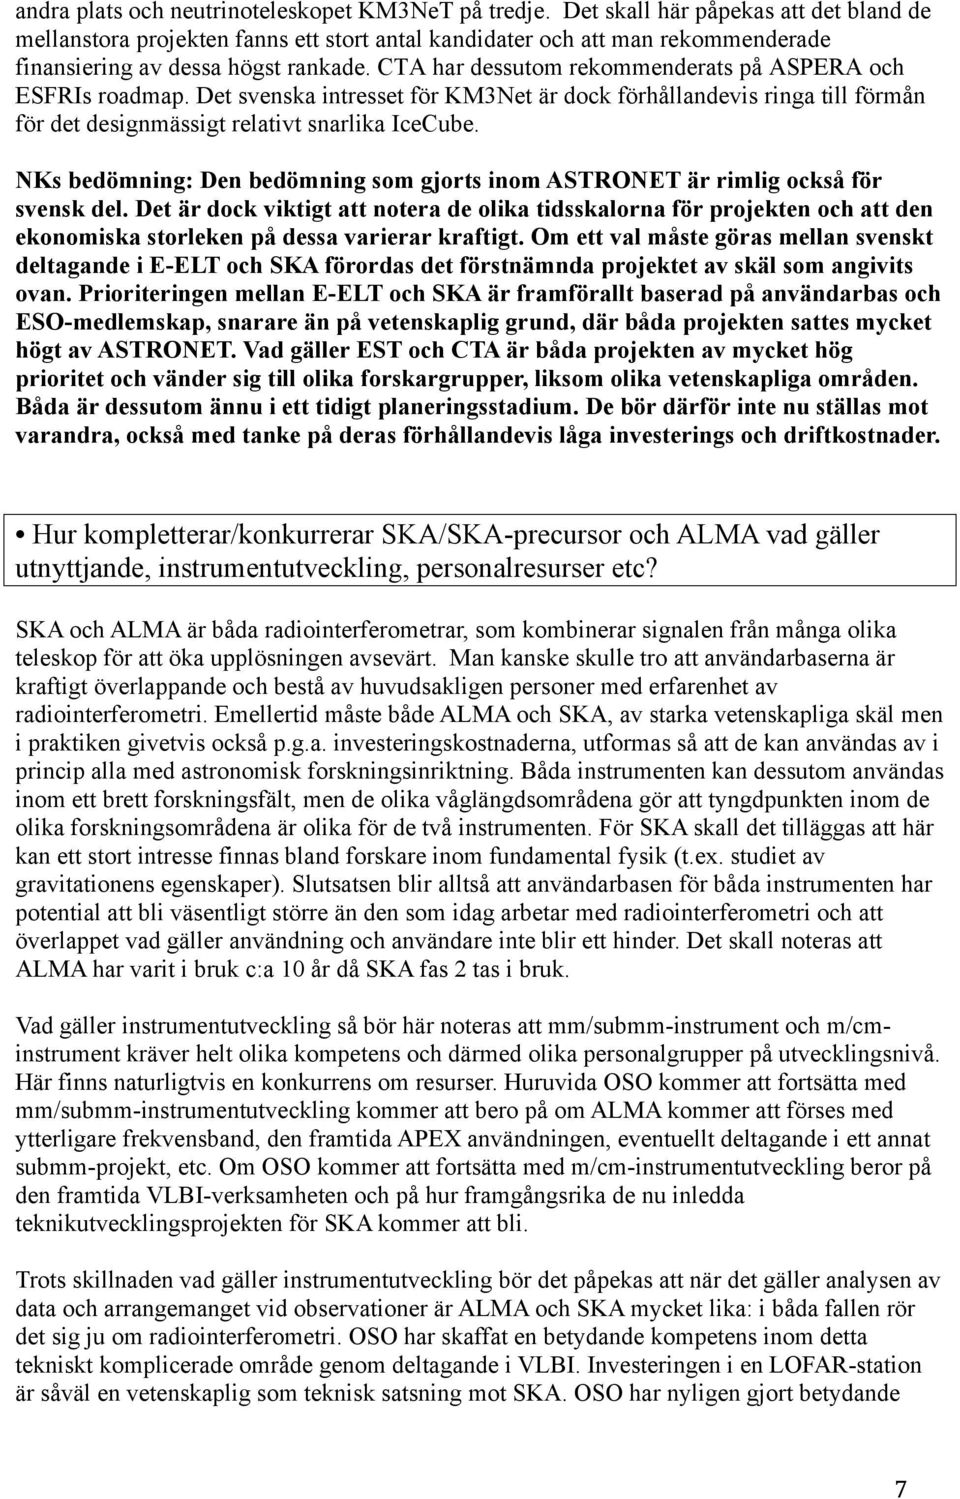 CTA har dessutom rekommenderats på ASPERA och ESFRIs roadmap. Det svenska intresset för KM3Net är dock förhållandevis ringa till förmån för det designmässigt relativt snarlika IceCube.